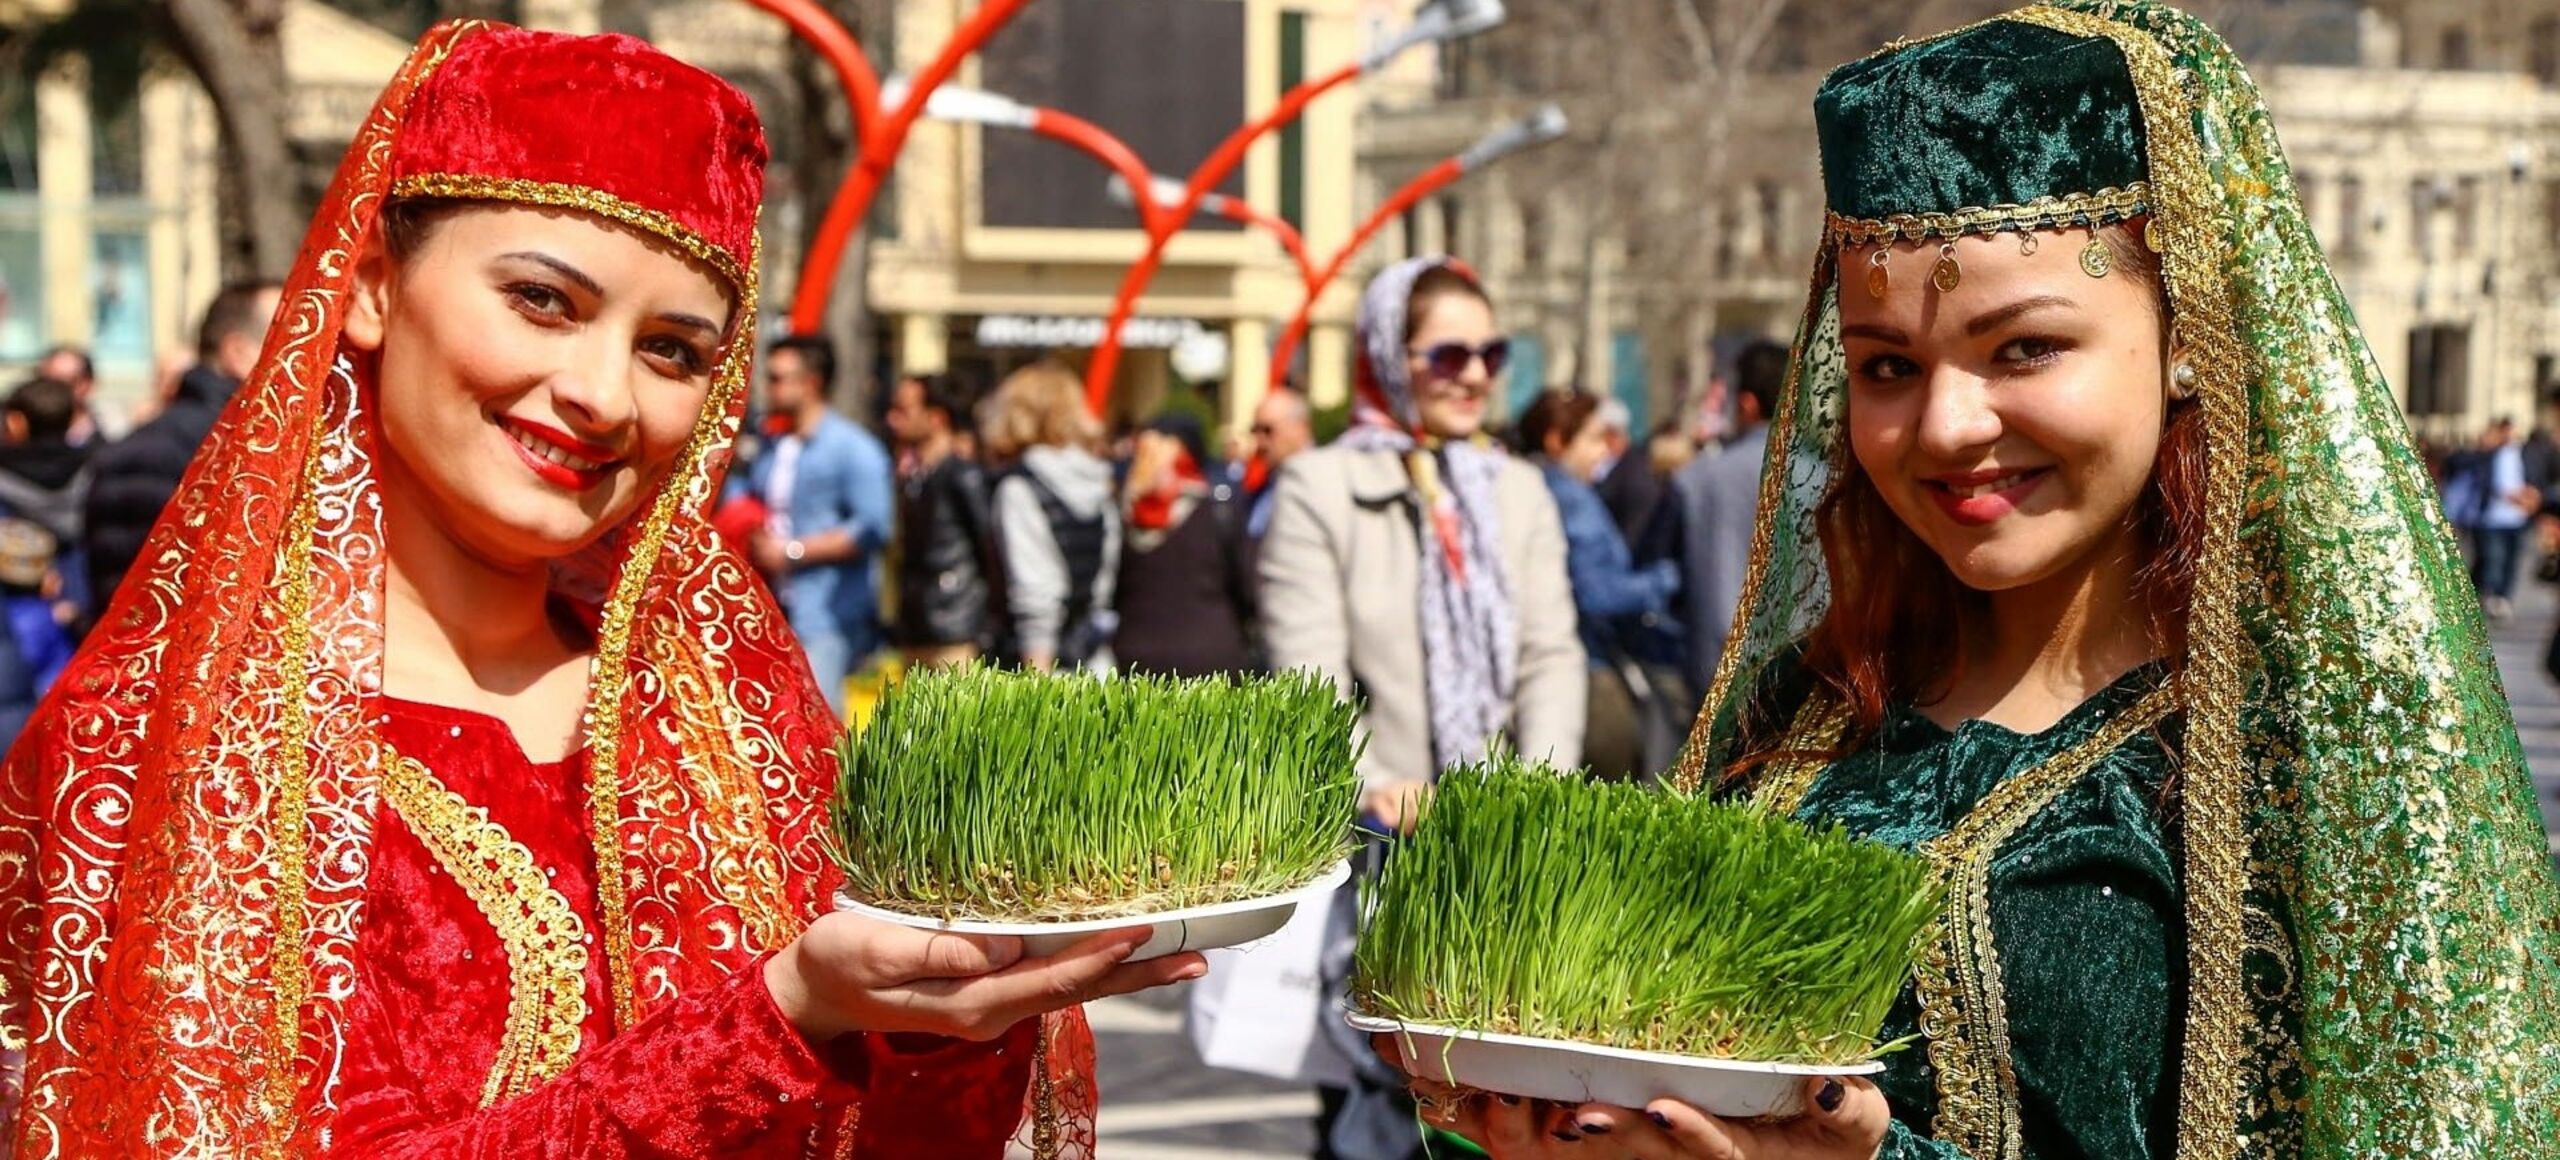 Праздник у азербайджанцев сегодня. Новруз в Азербайджане. Азербайджанский праздник весны. Ярмарка Навруз. Сладости на Новруз.